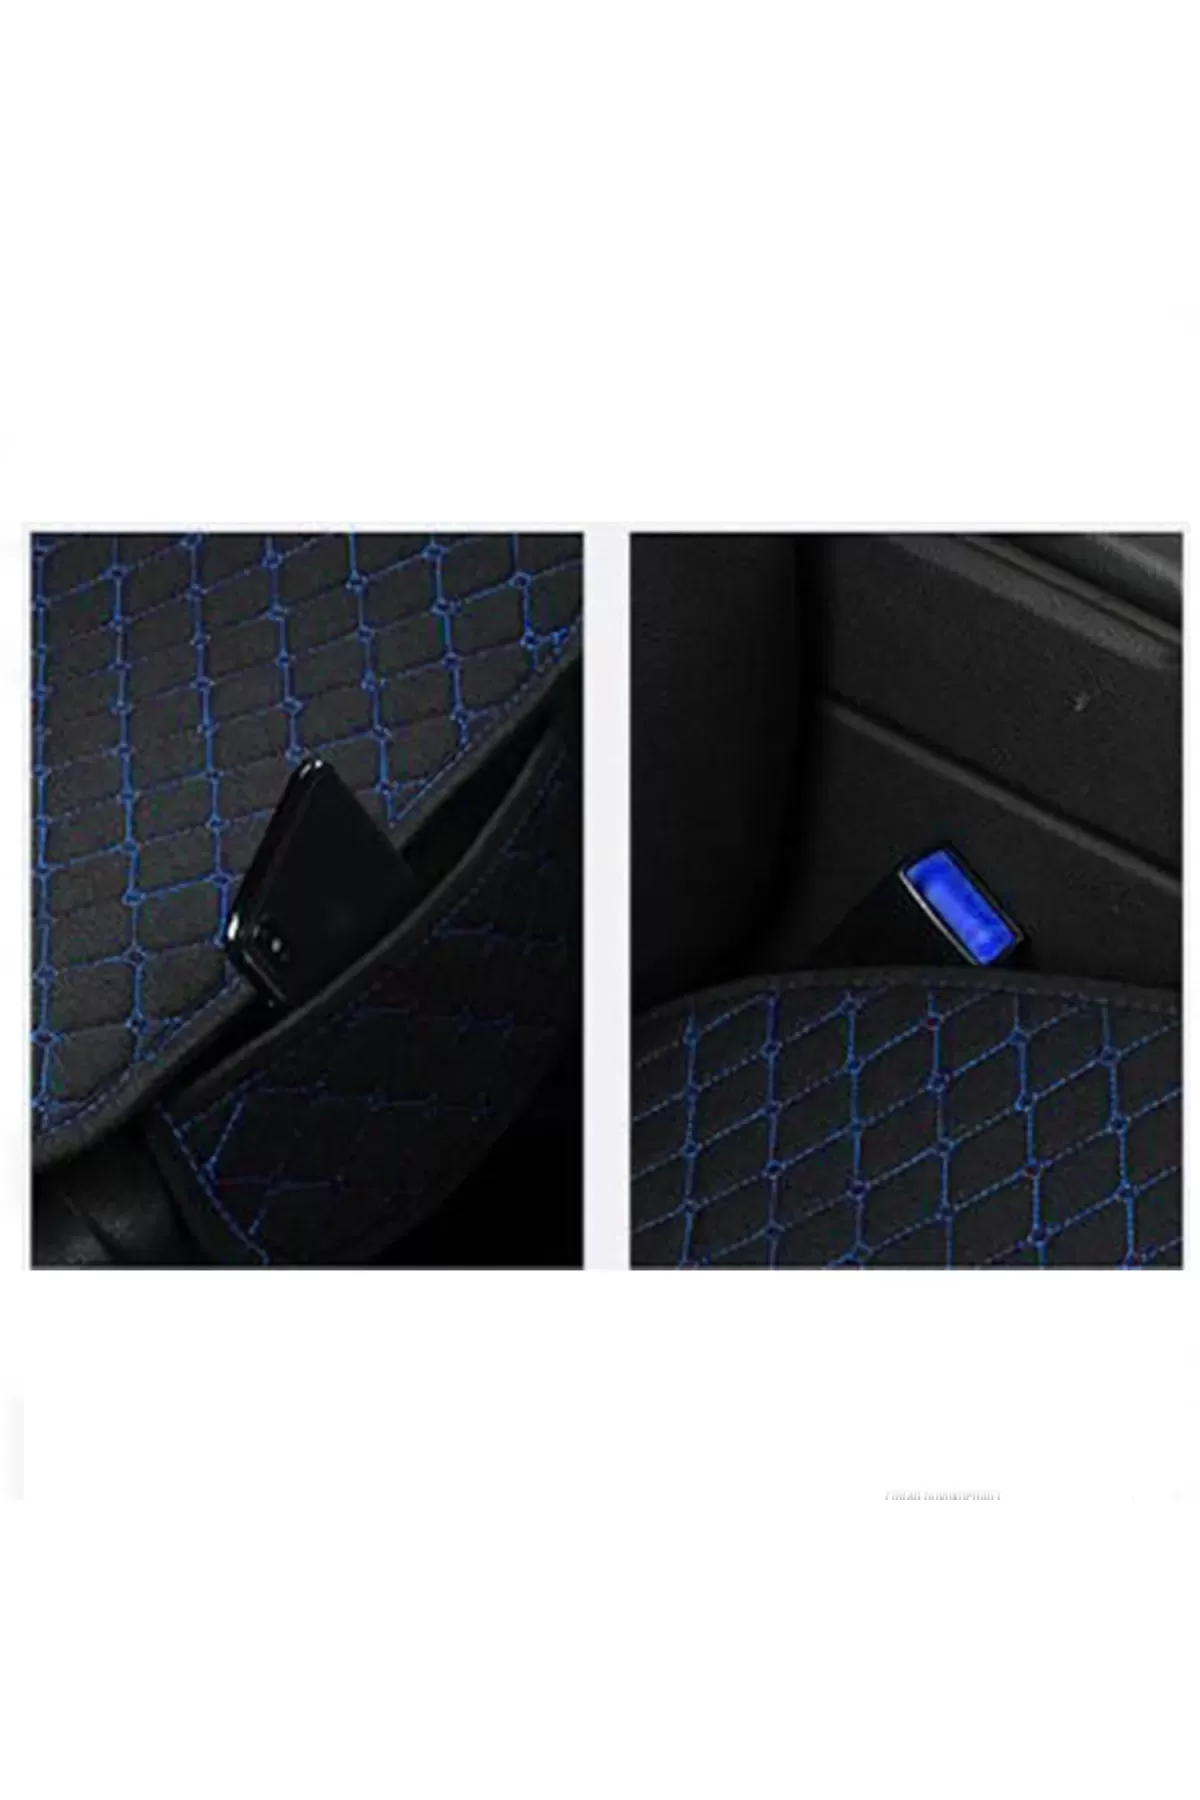 Araba Koltuk Minderi Ön Ve Arka Takım 3 Parça Aracınıza Stil Katın Siyah Kumaş Mavi